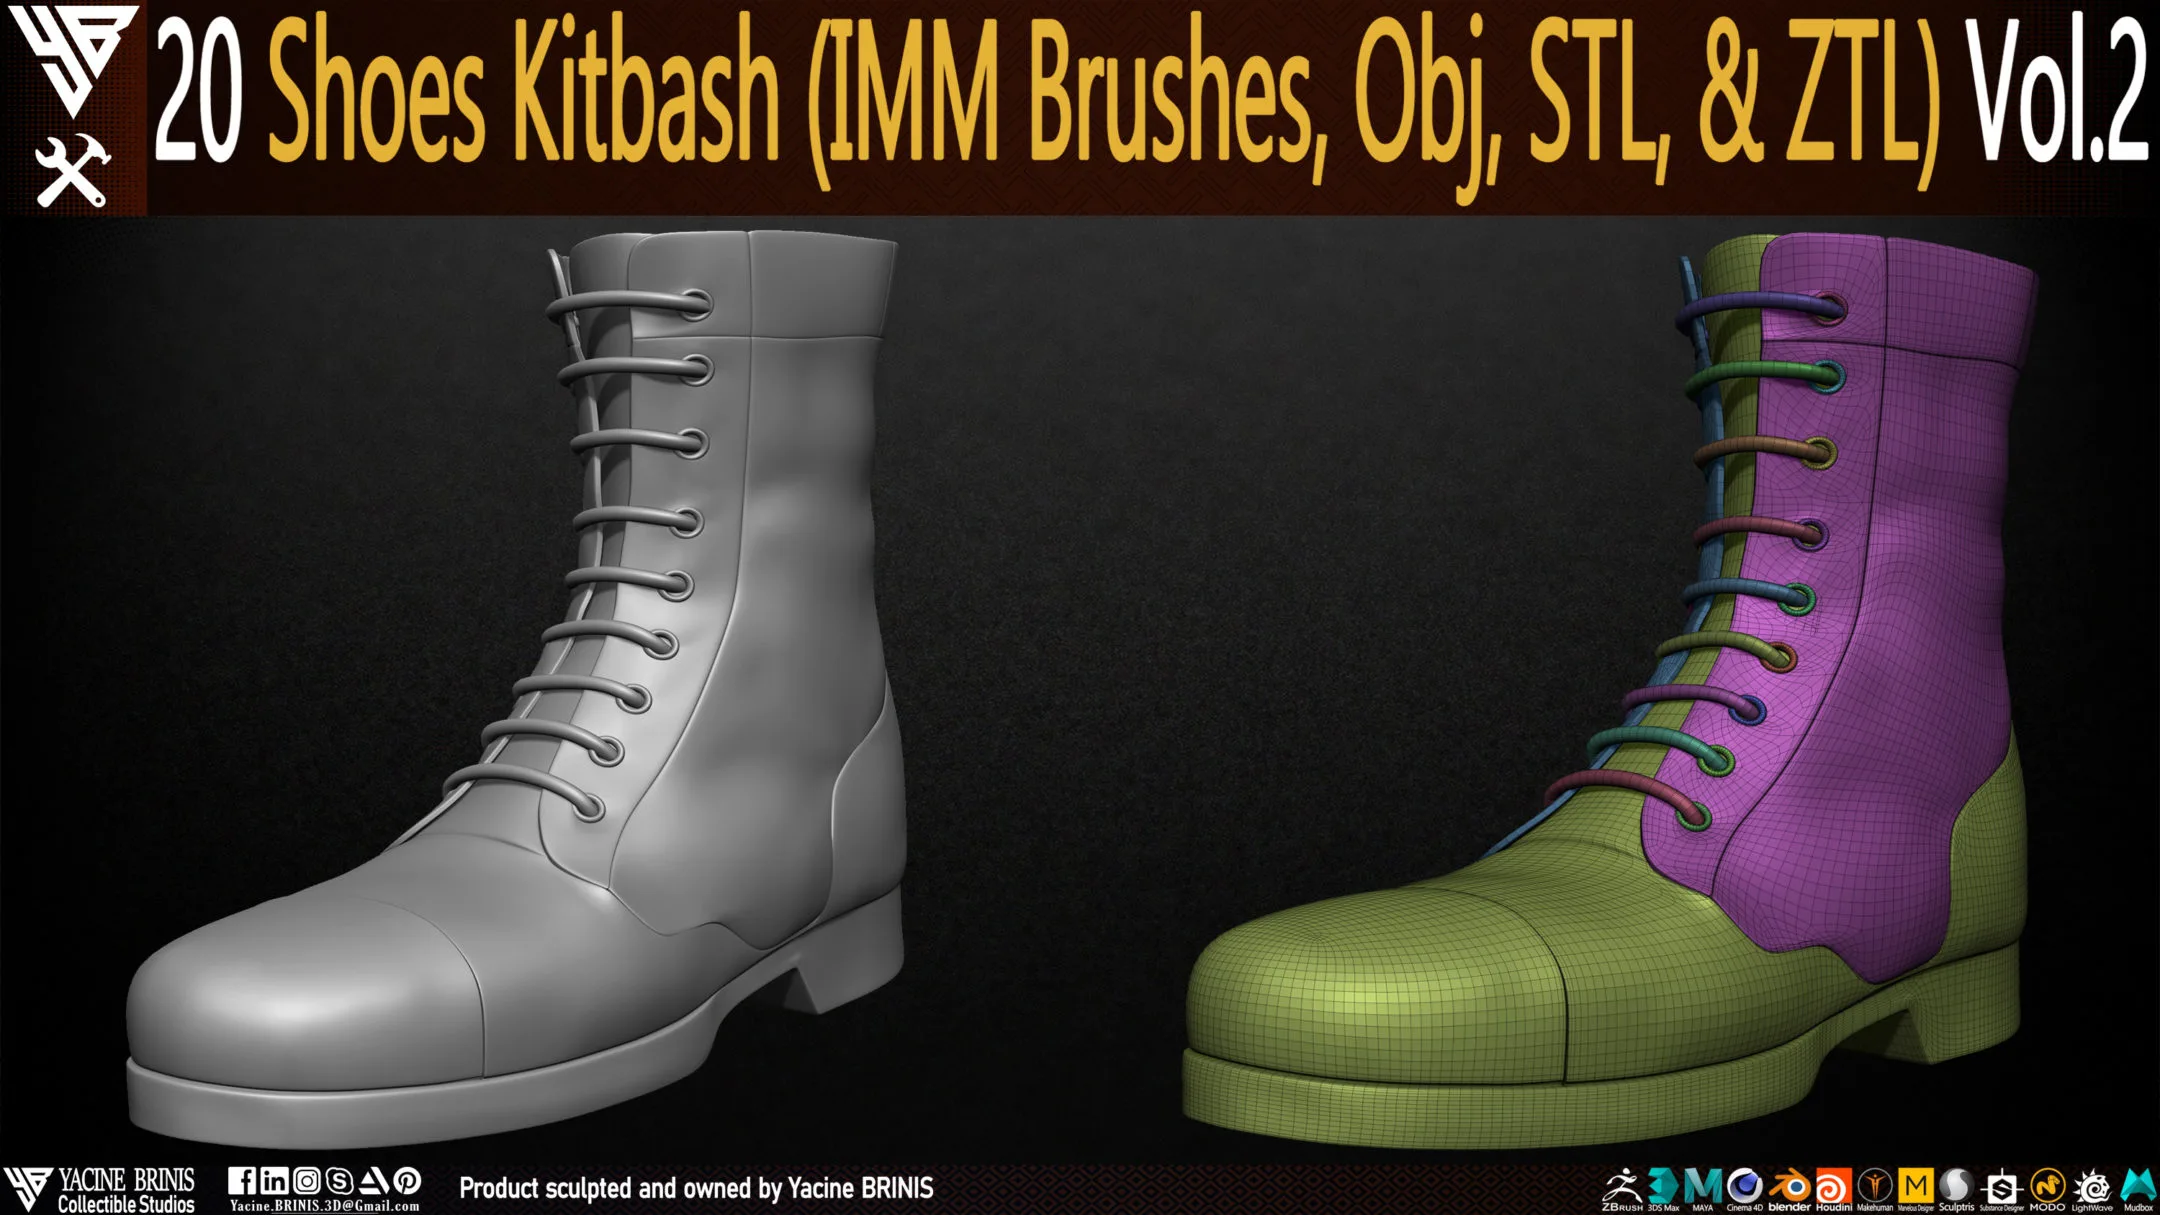 20 Shoes Kitbash (IMM Brush, Obj, STL, & ZTL) Vol 02